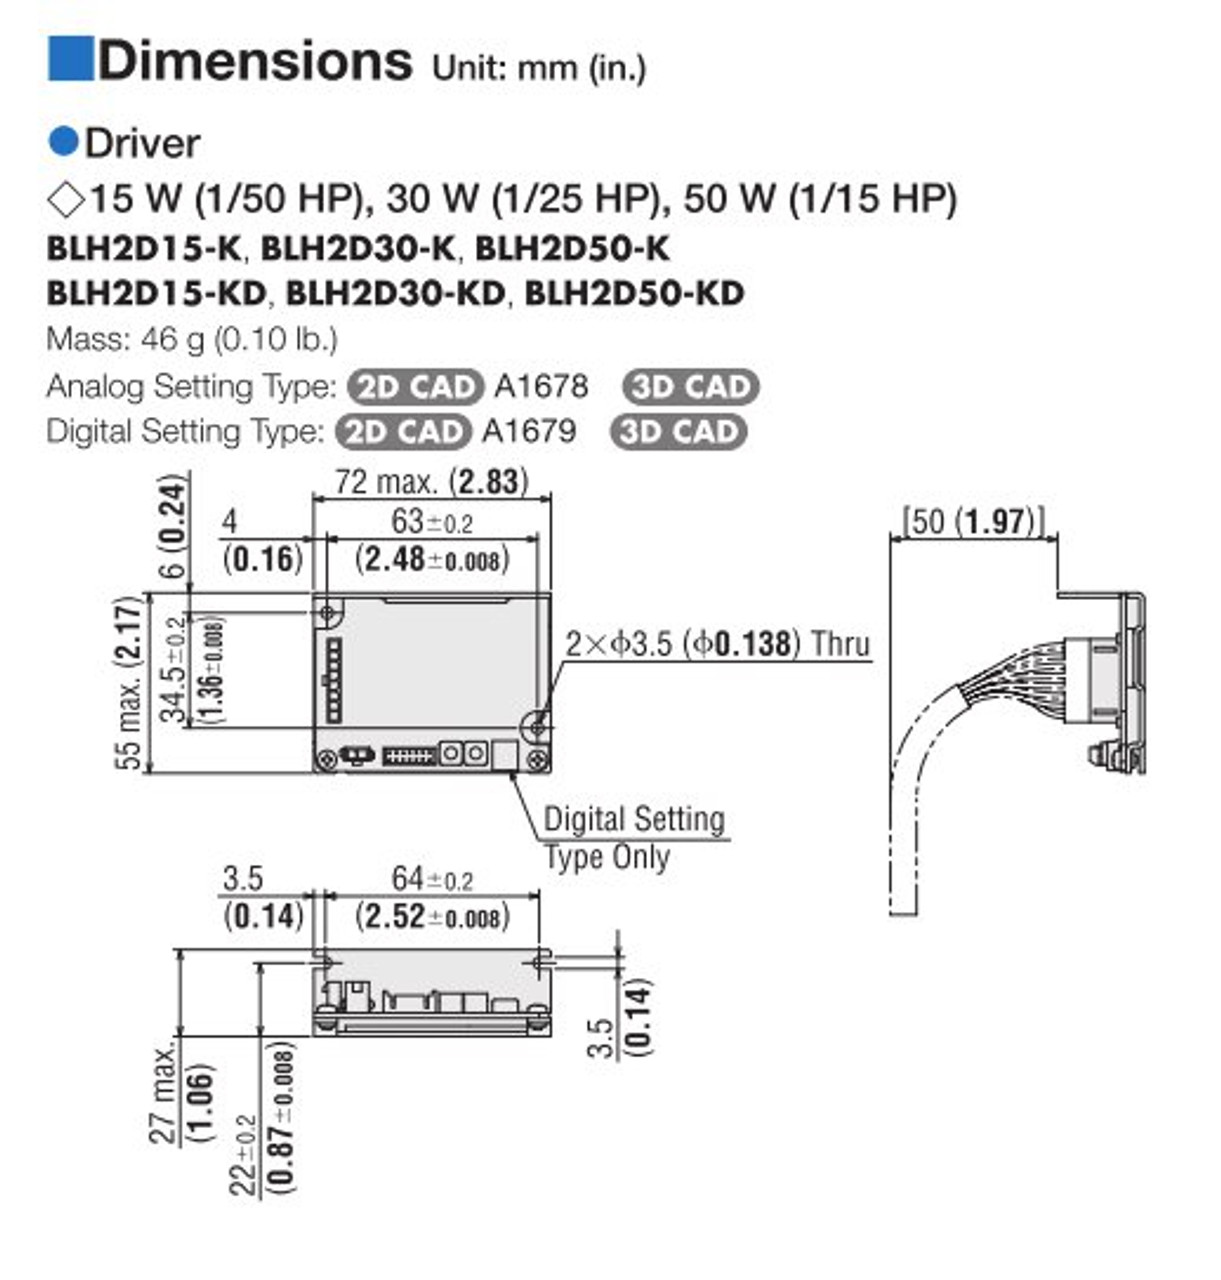 BLHM450KC-A / BLH2D50-K - Dimensions